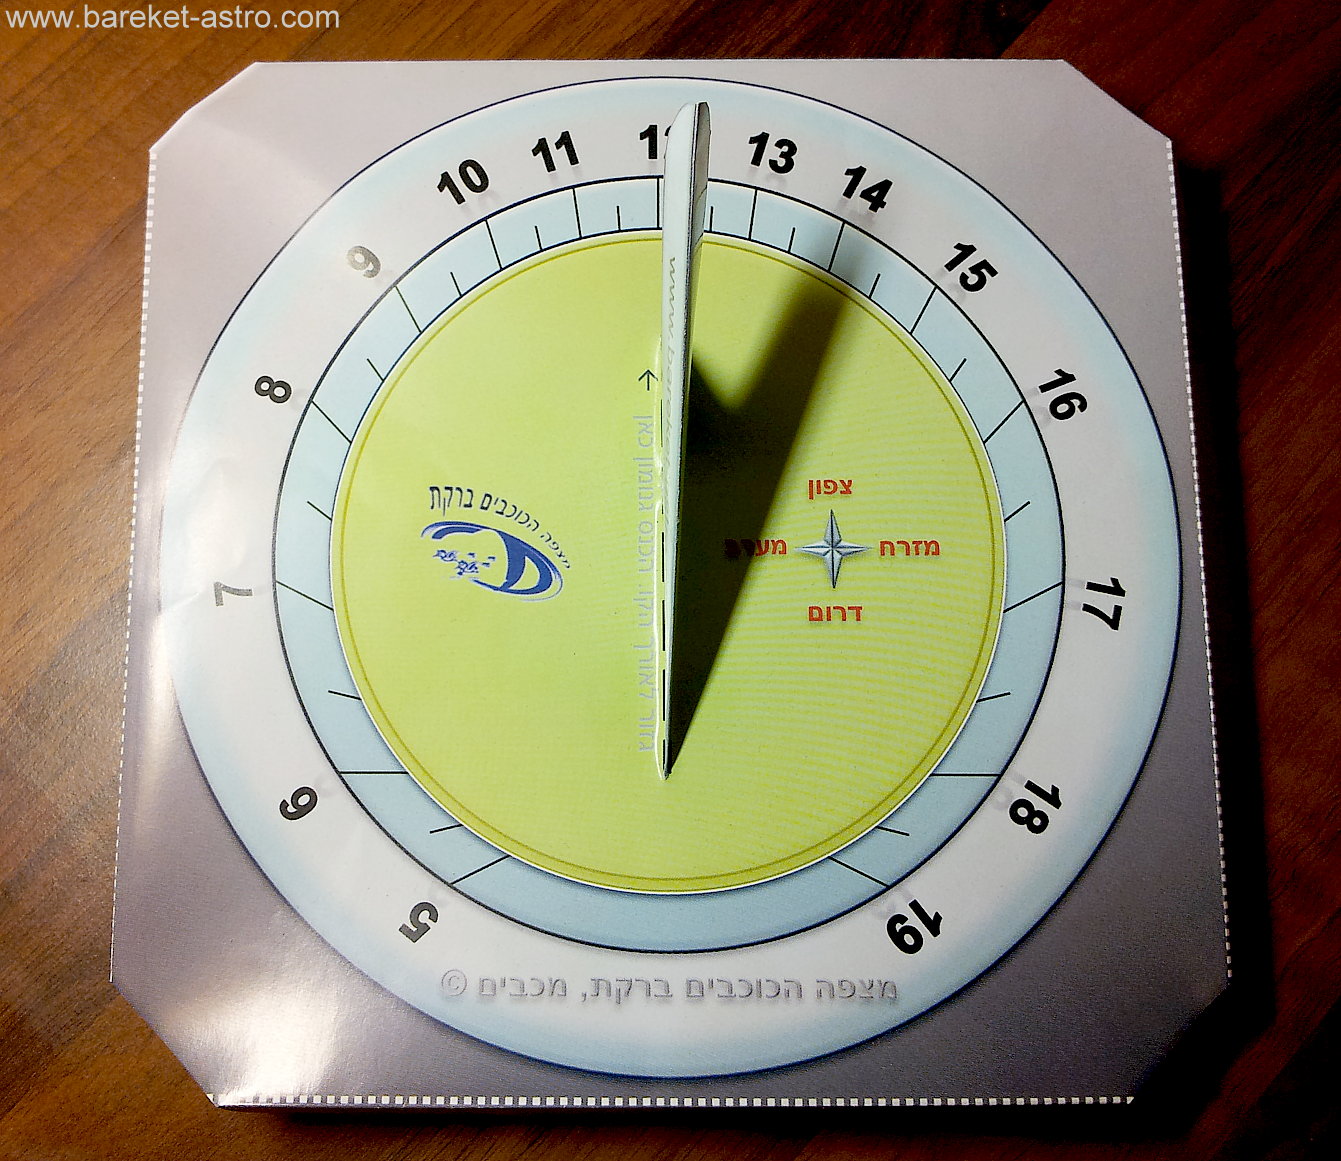 בניית שעון שמש - כלי למדידת הזמן | ערכת הכנה שעון שמש לישראל